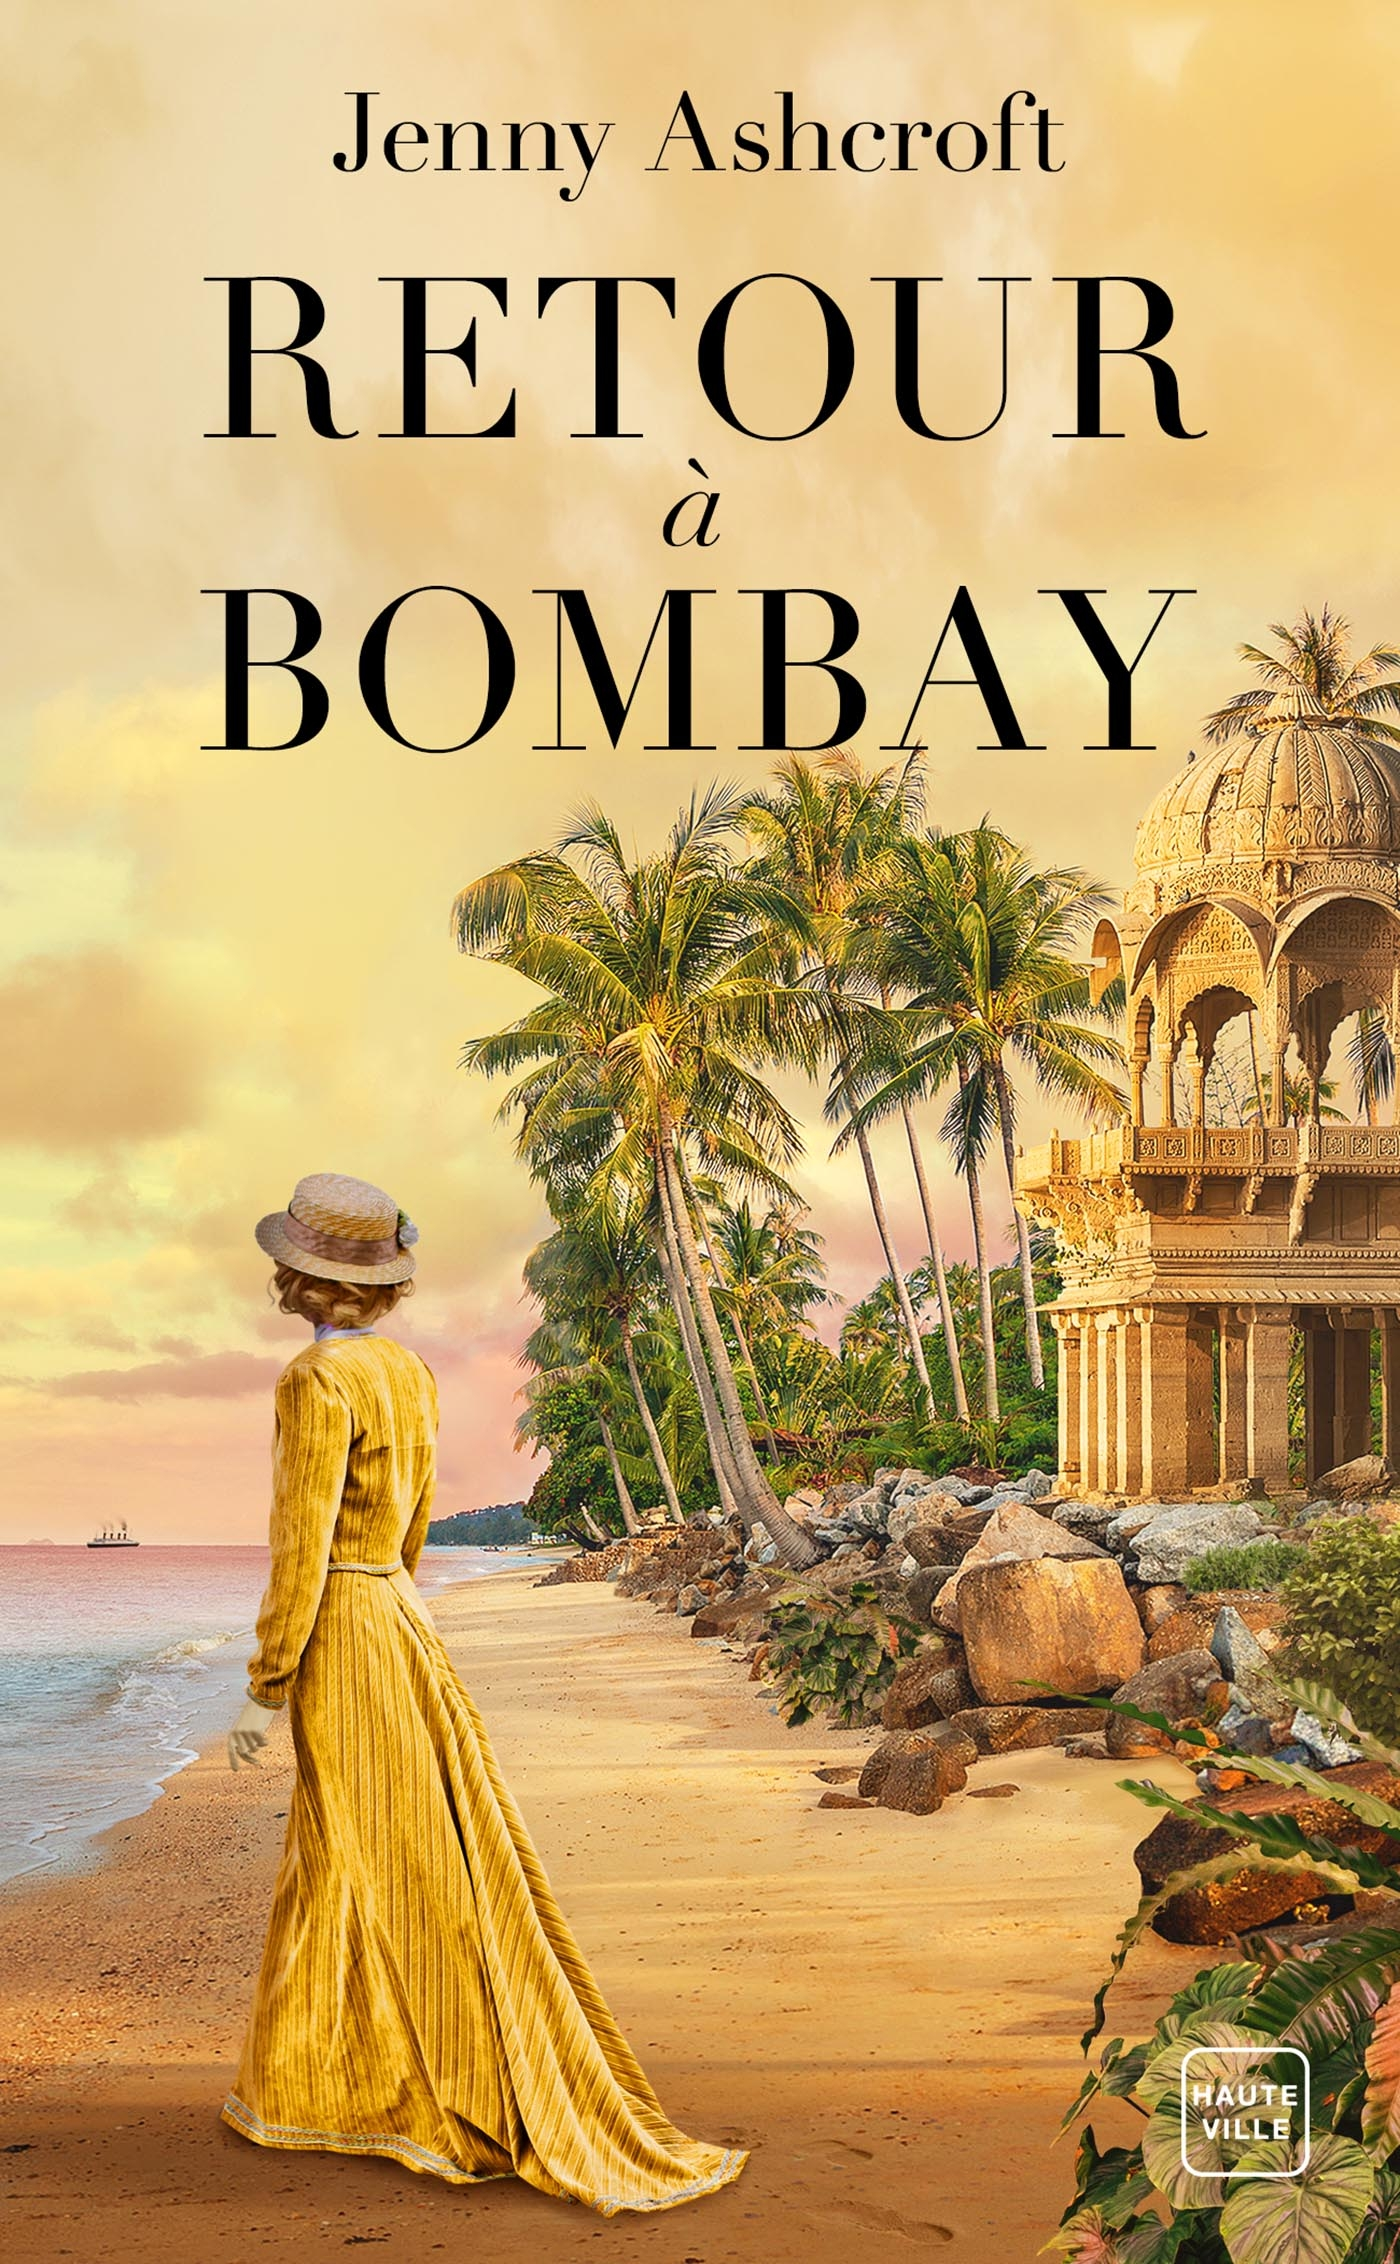 Afficher "Retour à Bombay"